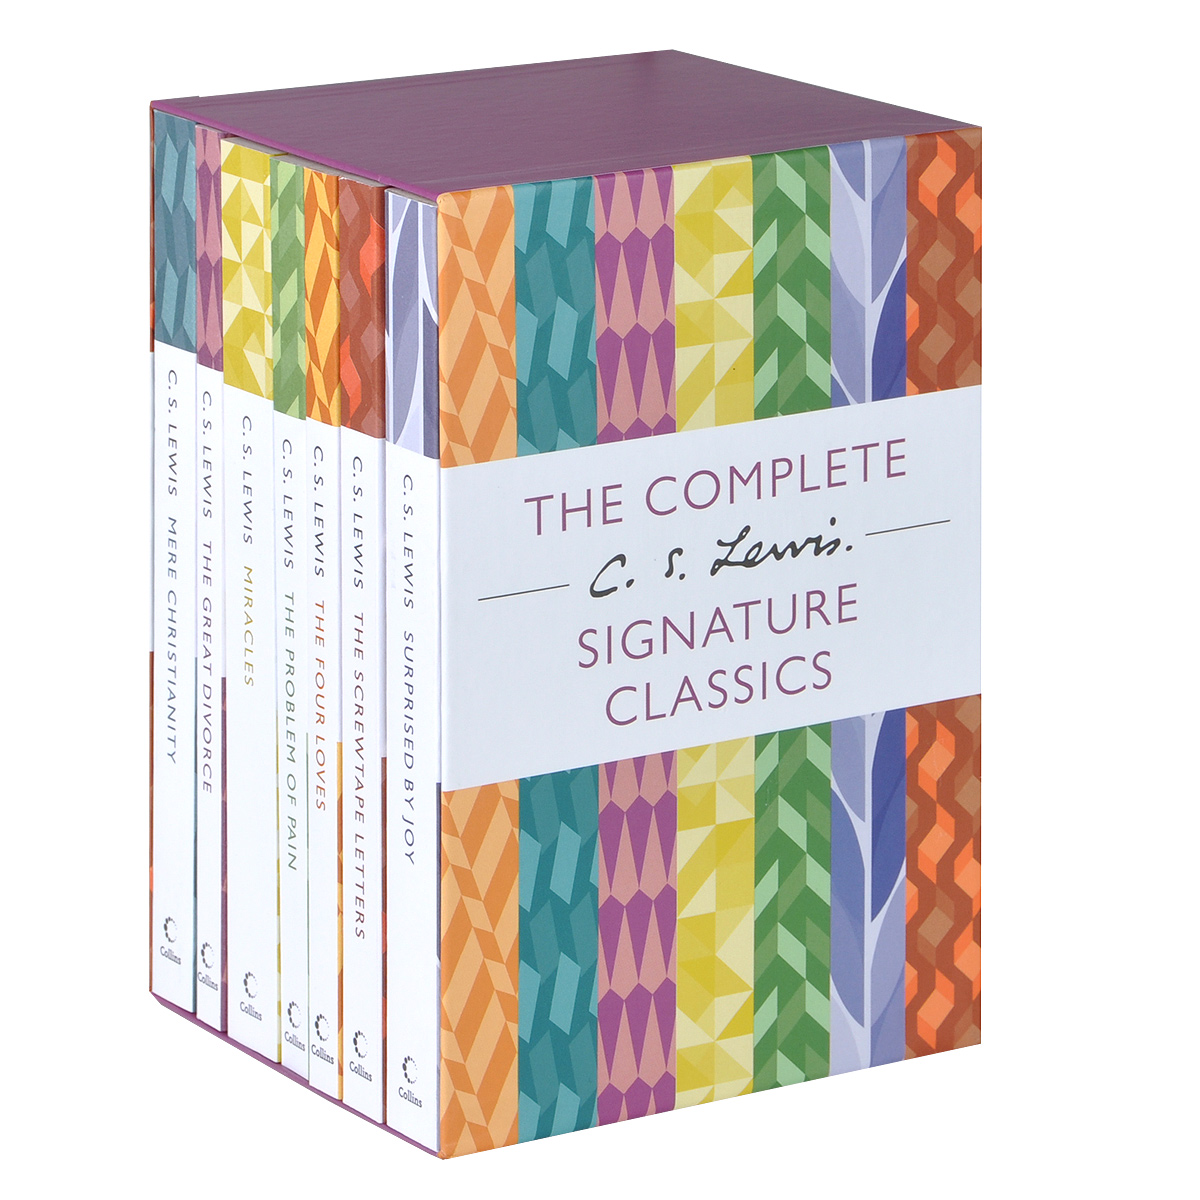 The Complete C. S. Lewis Signature Classics (комплект из 7 книг)